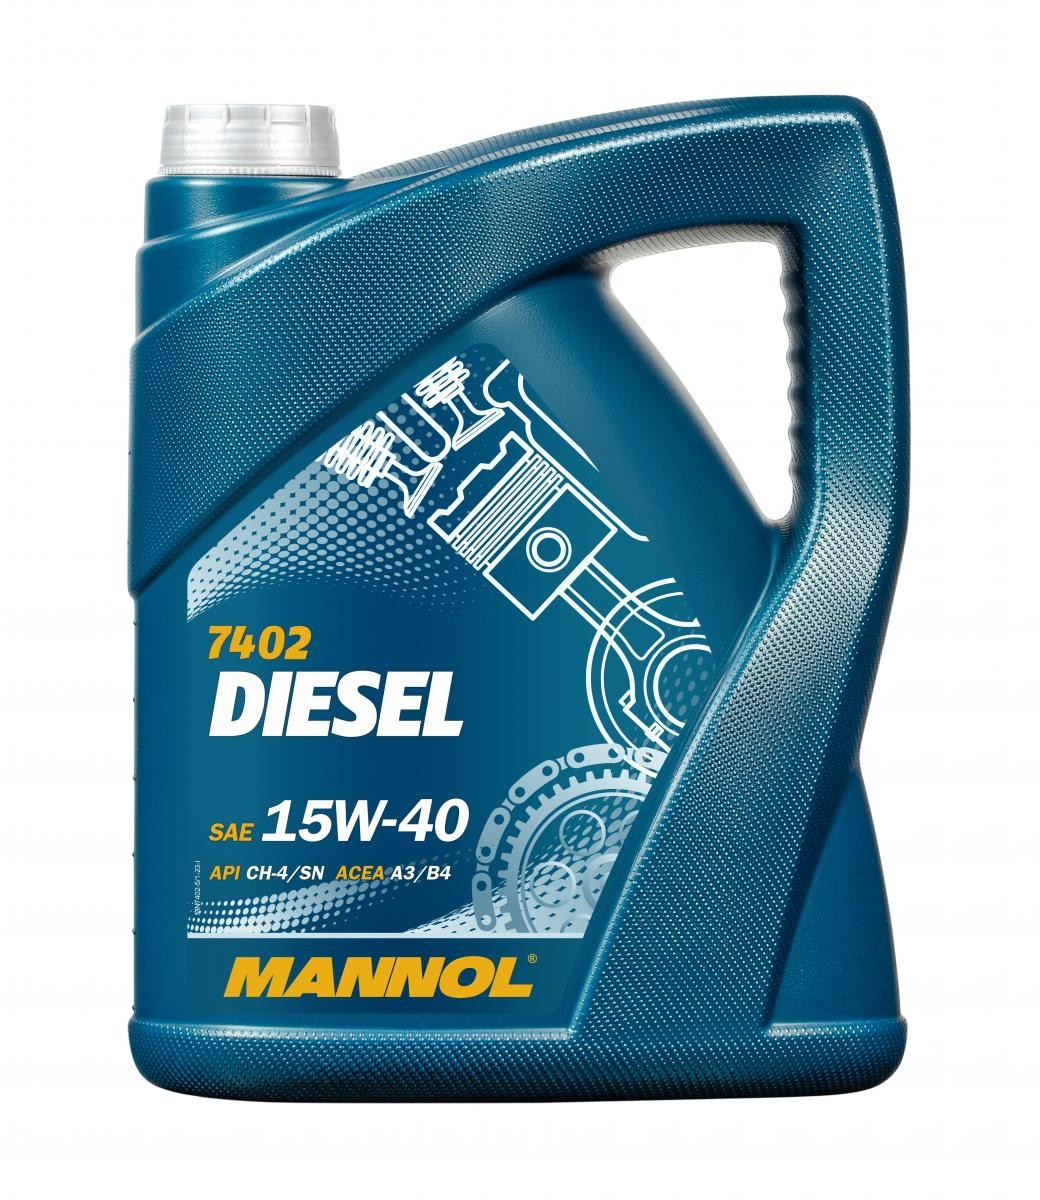 Car oil VW 505 00 MANNOL diesel - MN7402-5 DIESEL